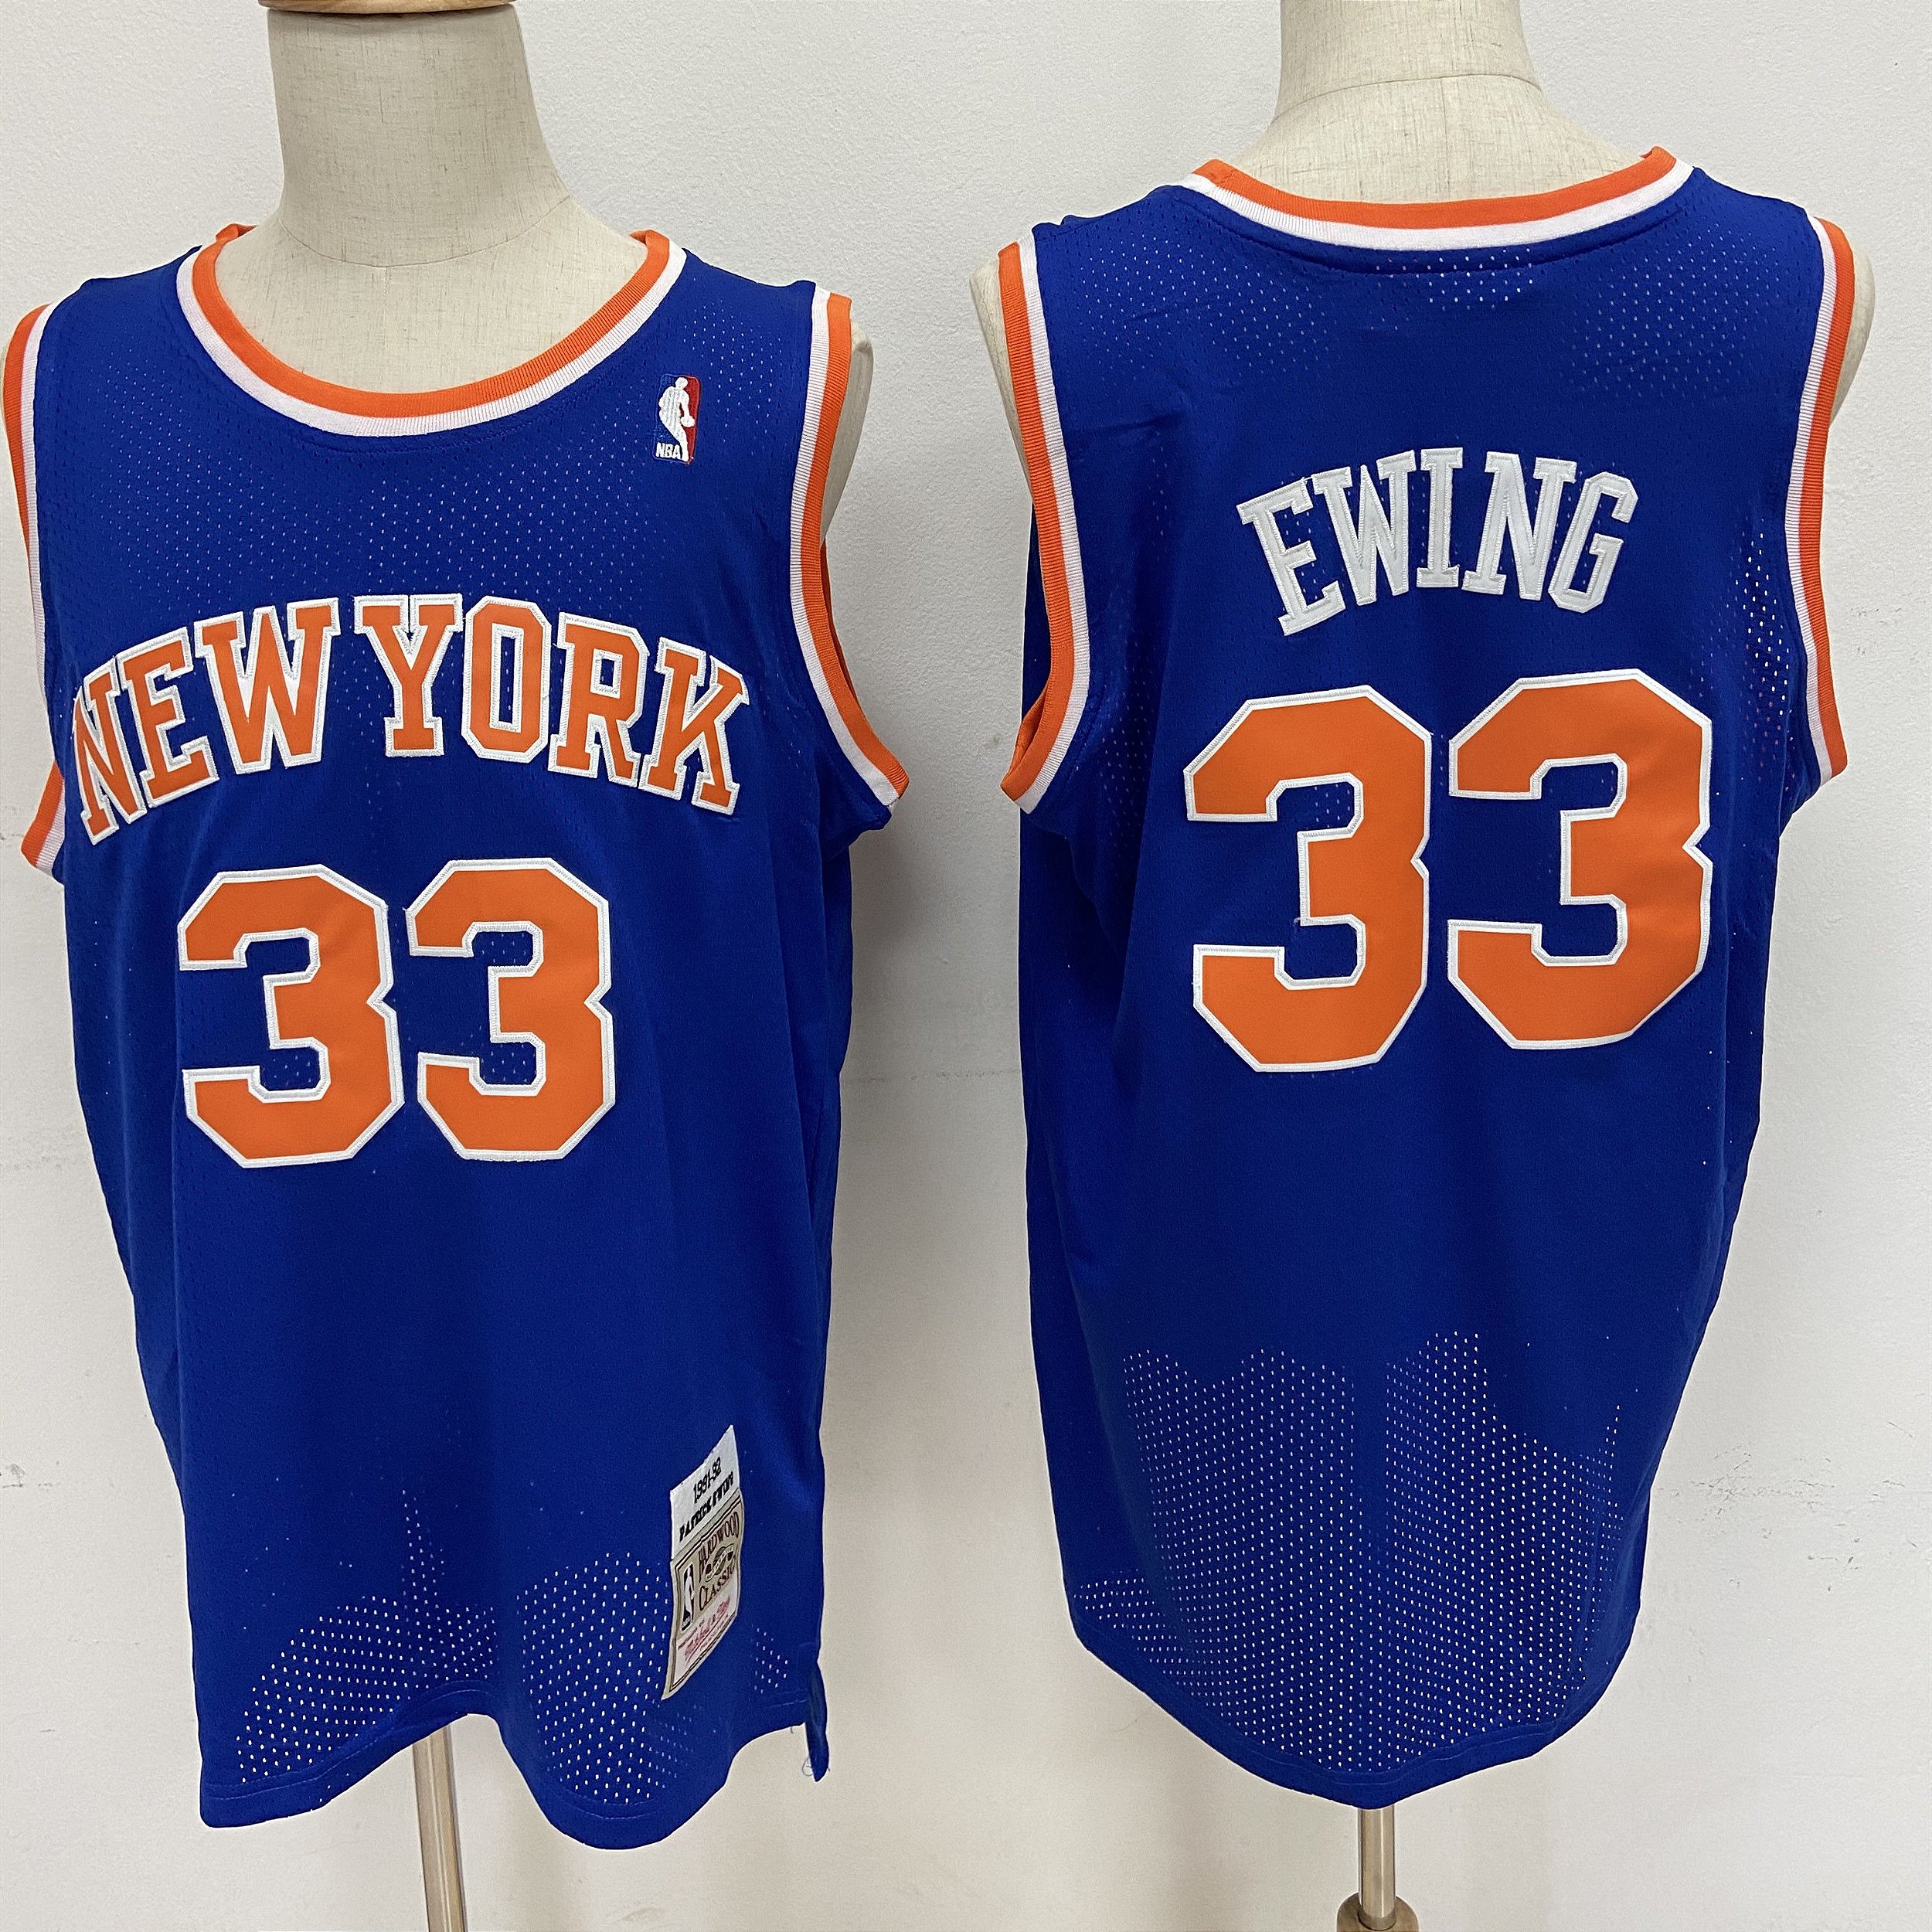 Camisa de Basquete Especial BAPE x New York Knicks - Patrick Ewing 33 -  Dunk Import - Camisas de Basquete, Futebol Americano, Baseball e Hockey